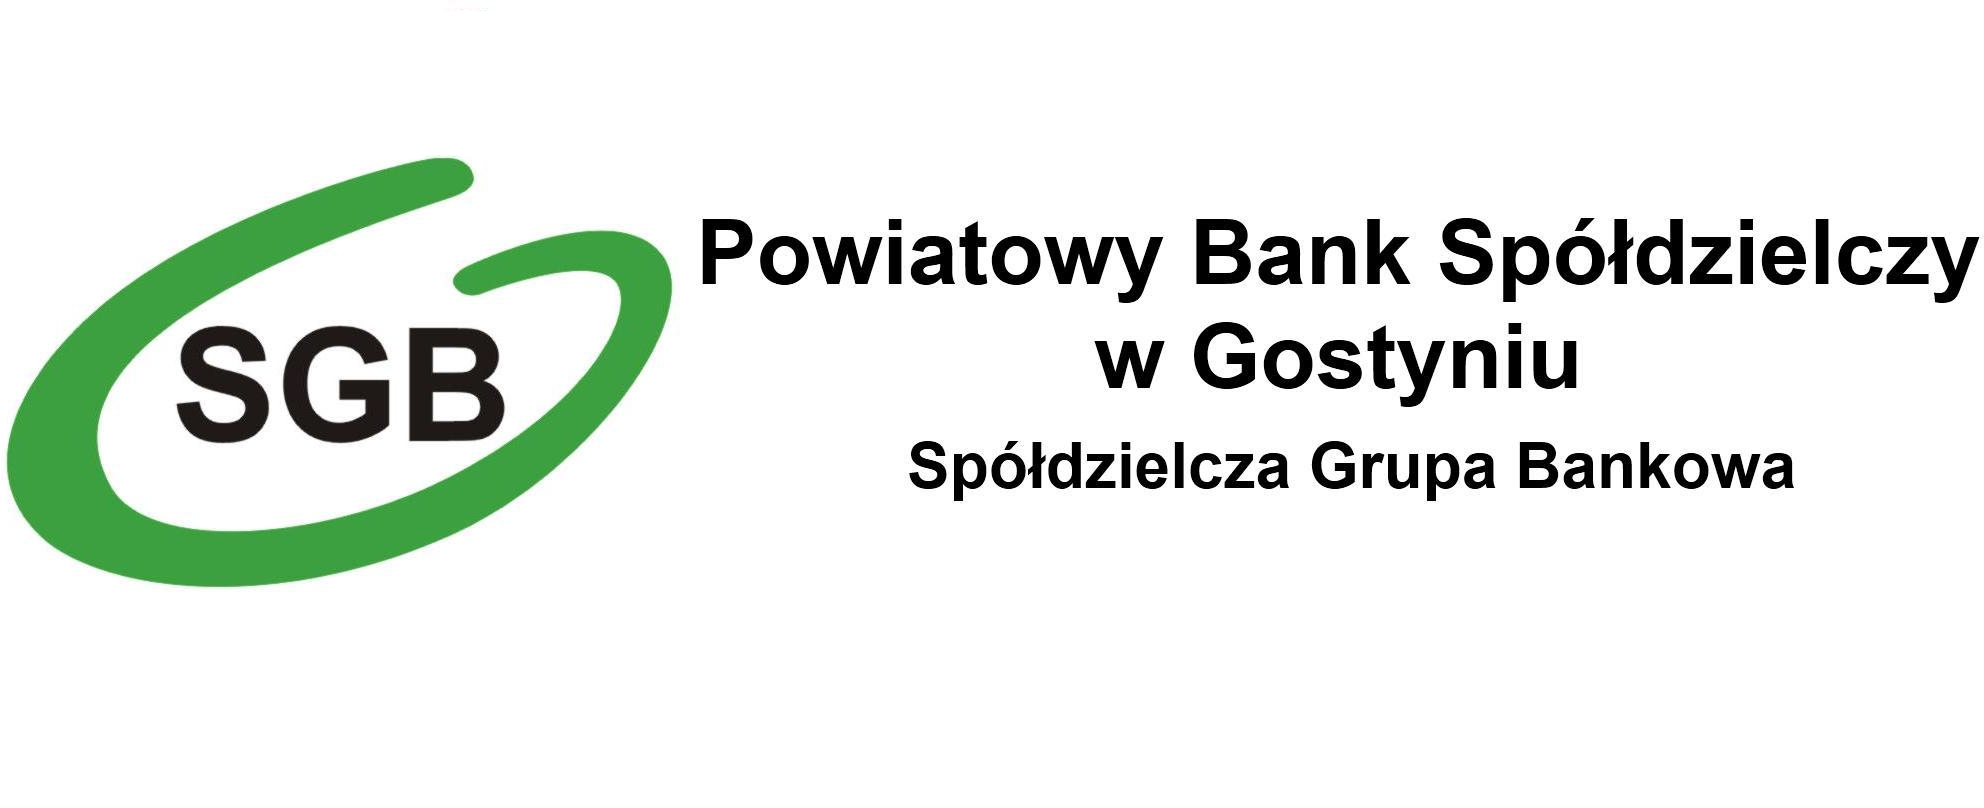 Oferta dla Ciebie - Powiatowy Bank Spółdzielczy w Gostyniu